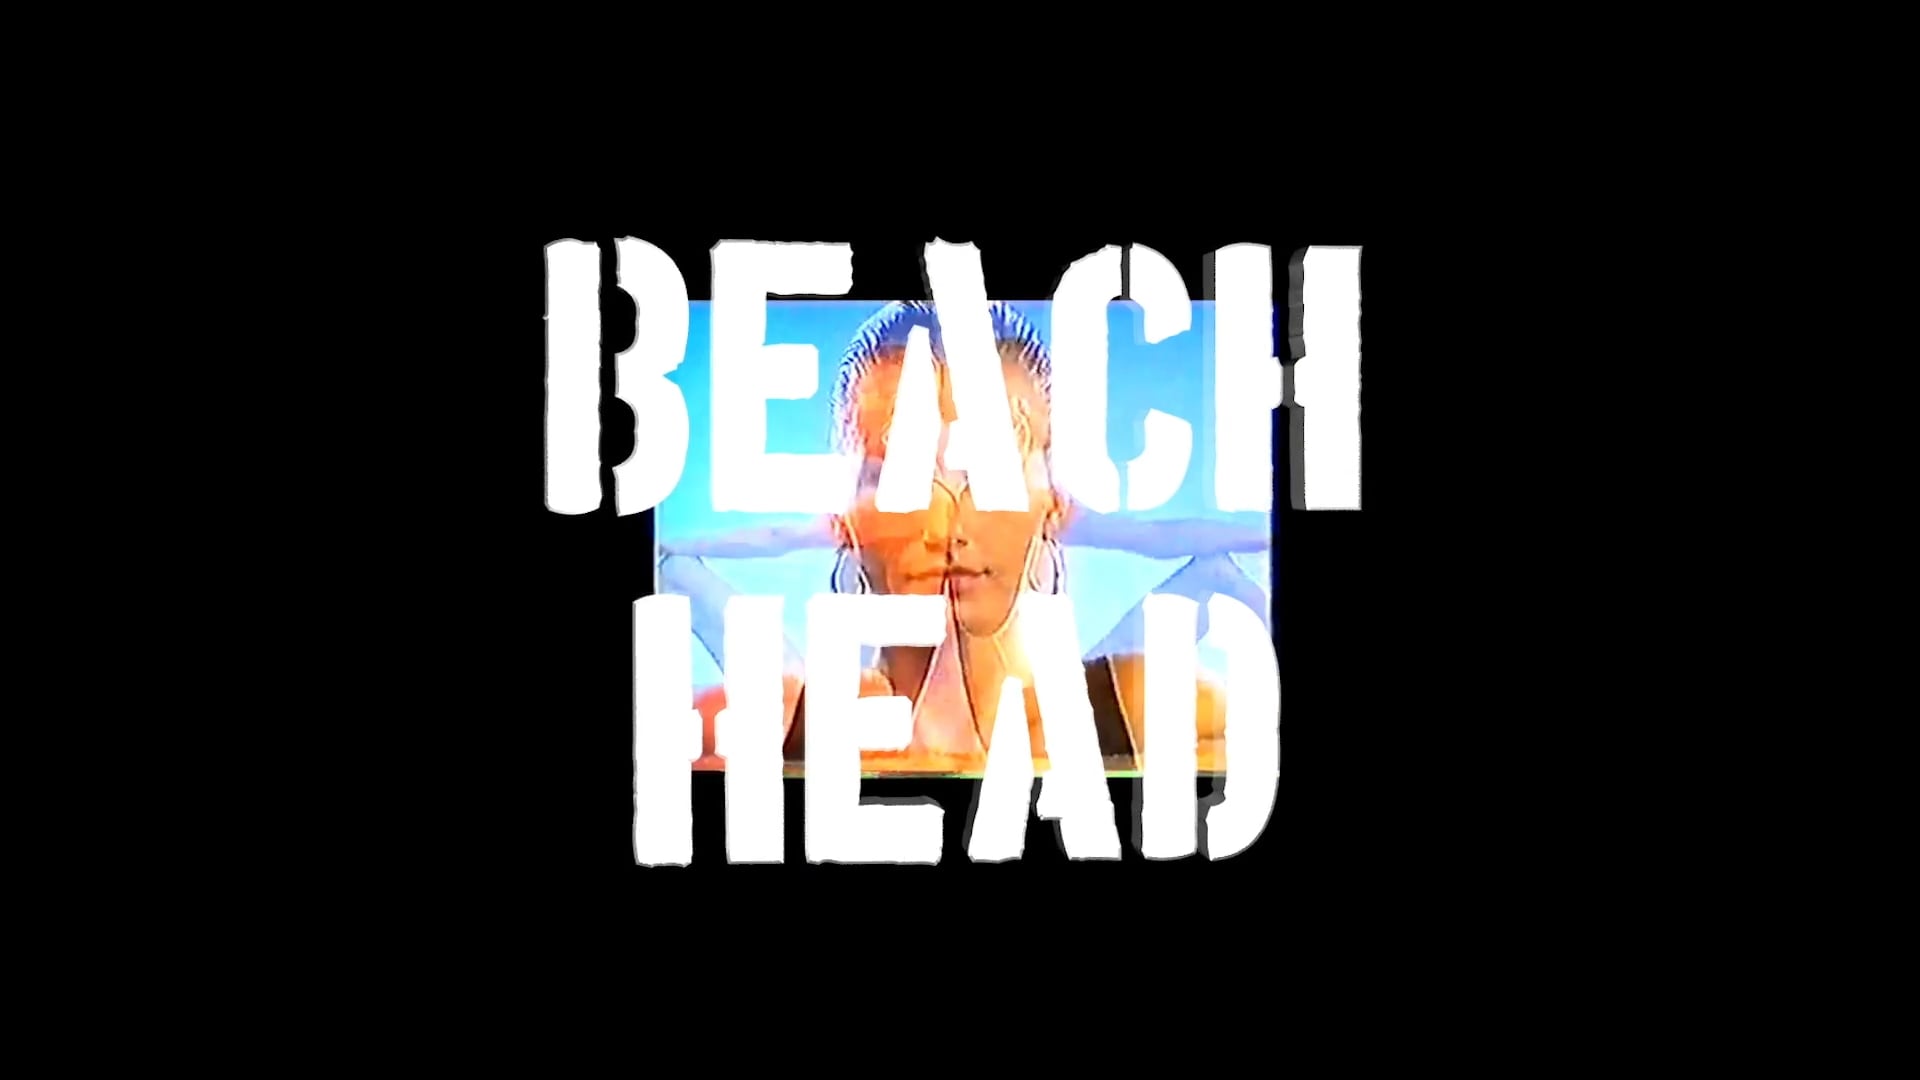 THE BEACH HEAD MOVIE